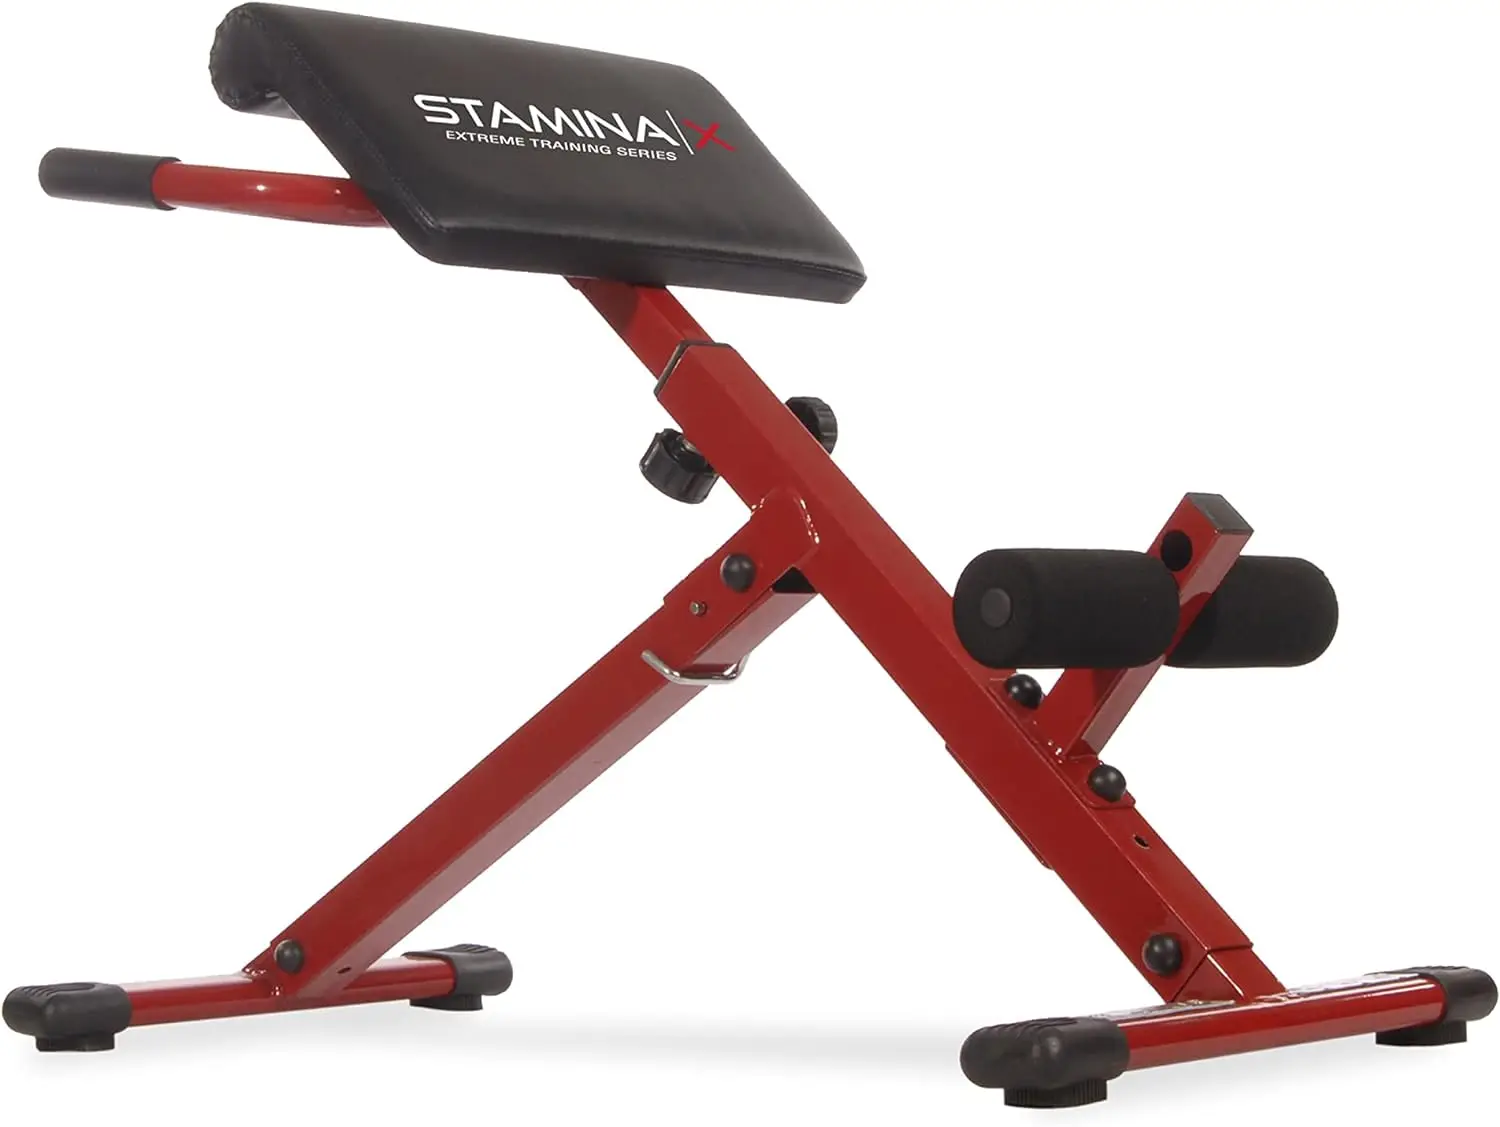 

Регулируемое складное кресло Hyperextension с приложением Smart Workout для домашних тренировок, весом до 250 фунтов